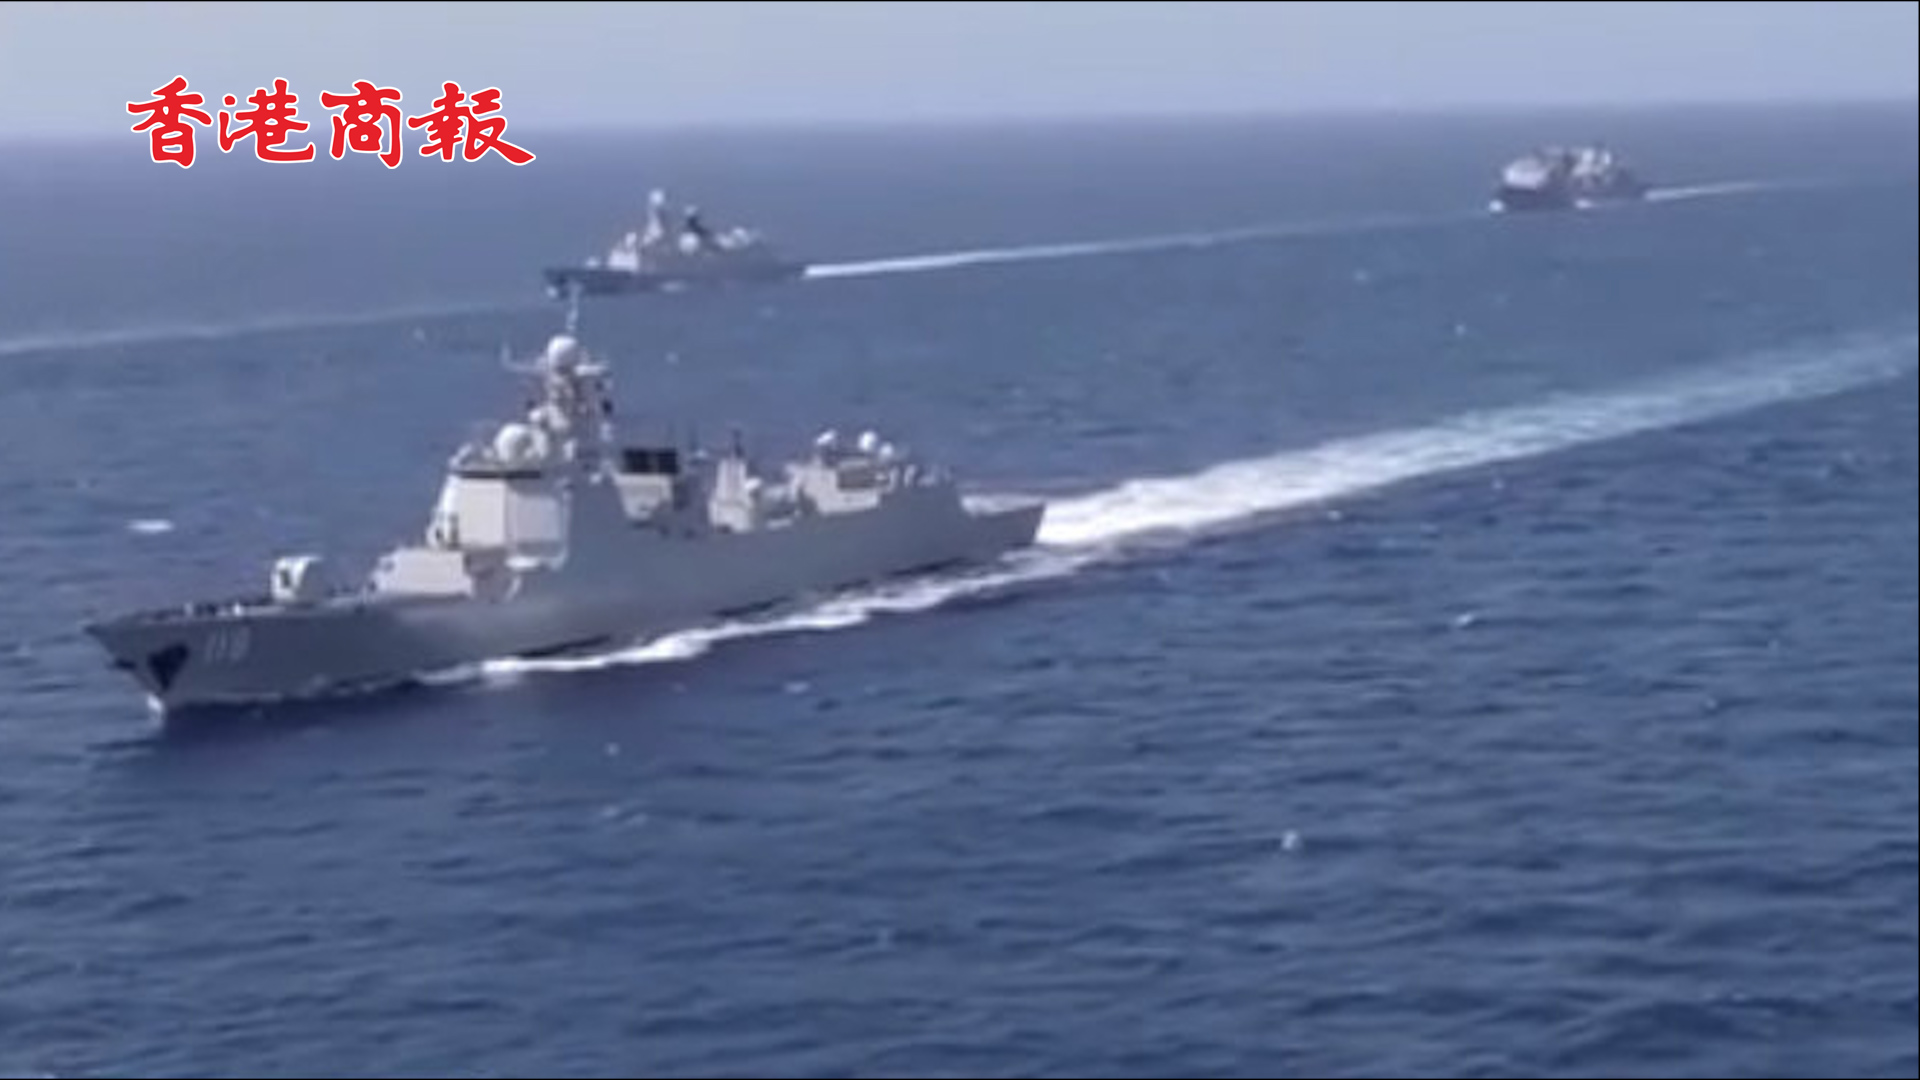 有片丨海軍第39批護航編隊接力護送中國香港籍貨船 